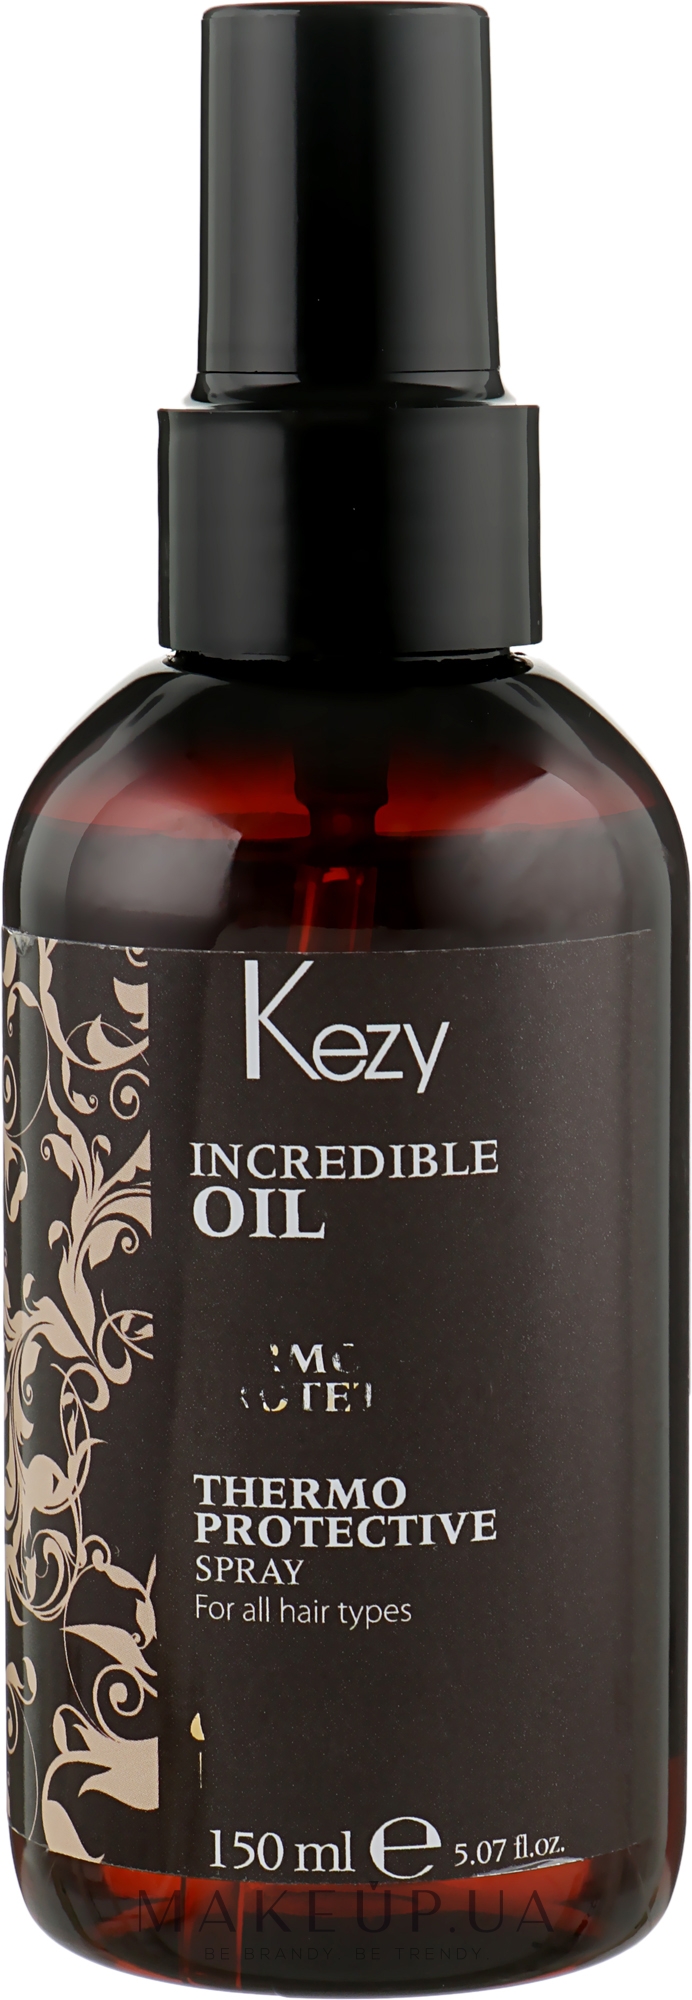 Спрей термозахисний для волосся - Kezy Incredible Oil Thermoprotective Spray — фото 150ml